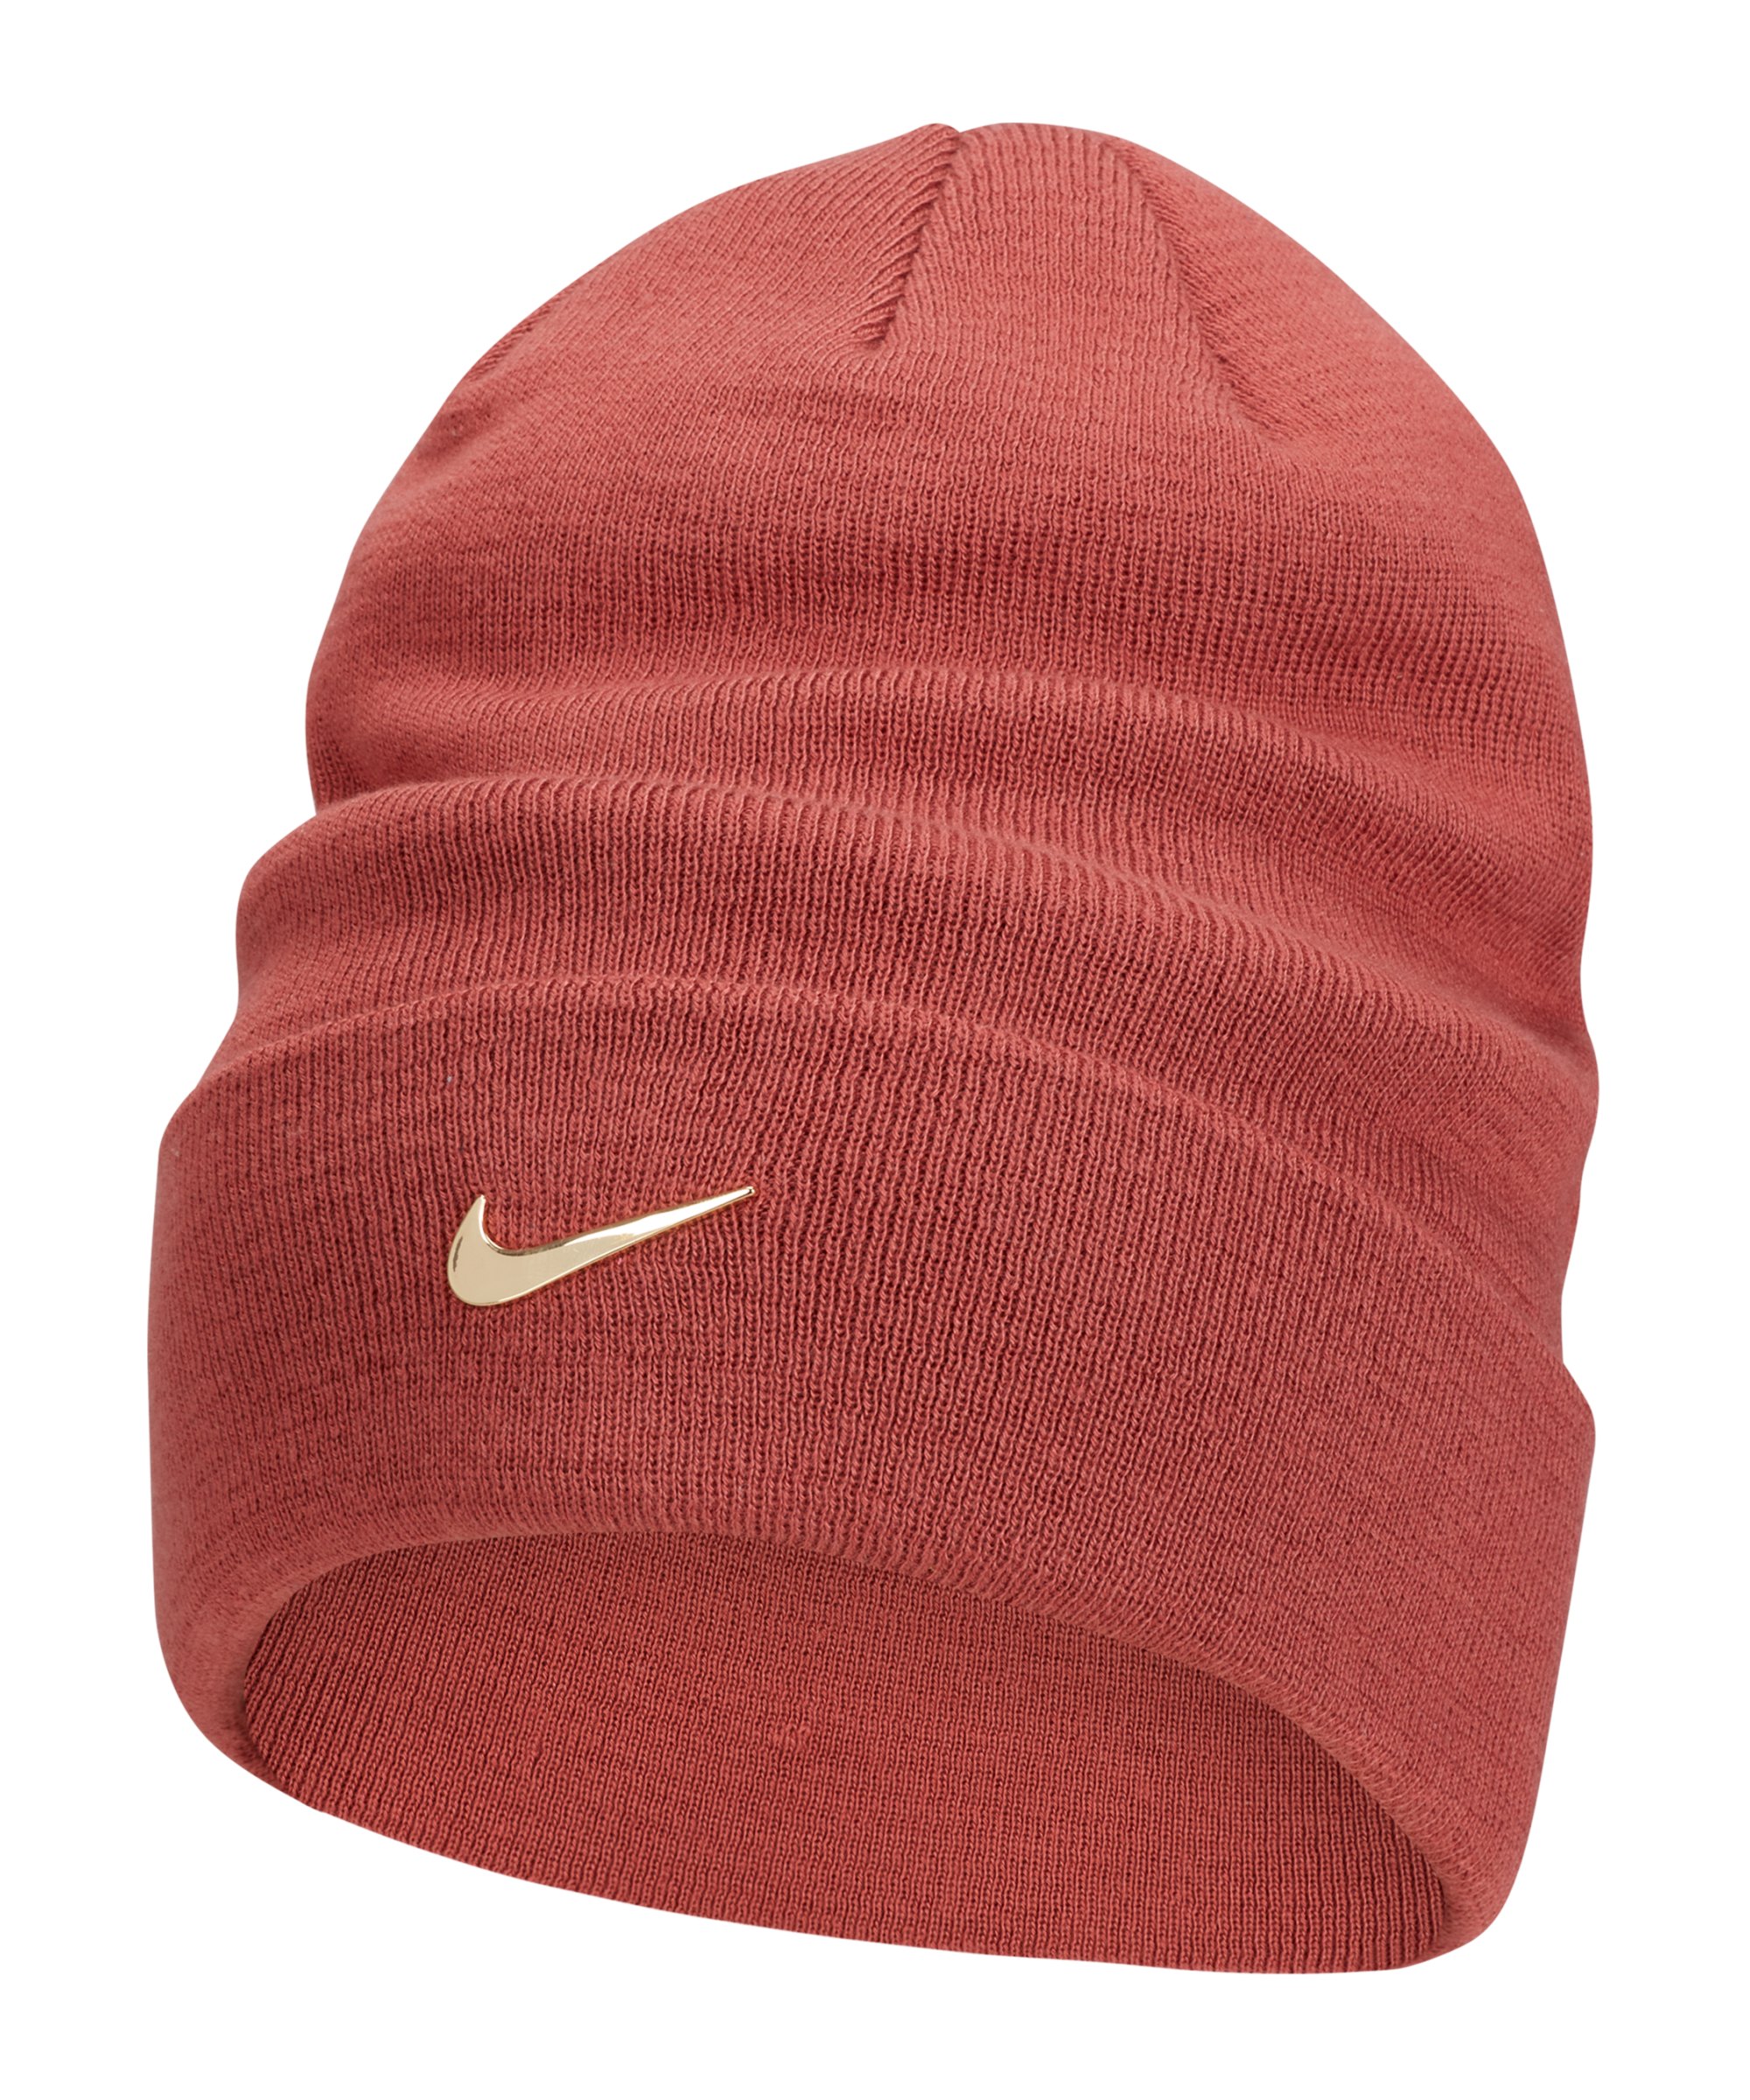 Nike Swoosh Beanie Rot Gold F691 - rot